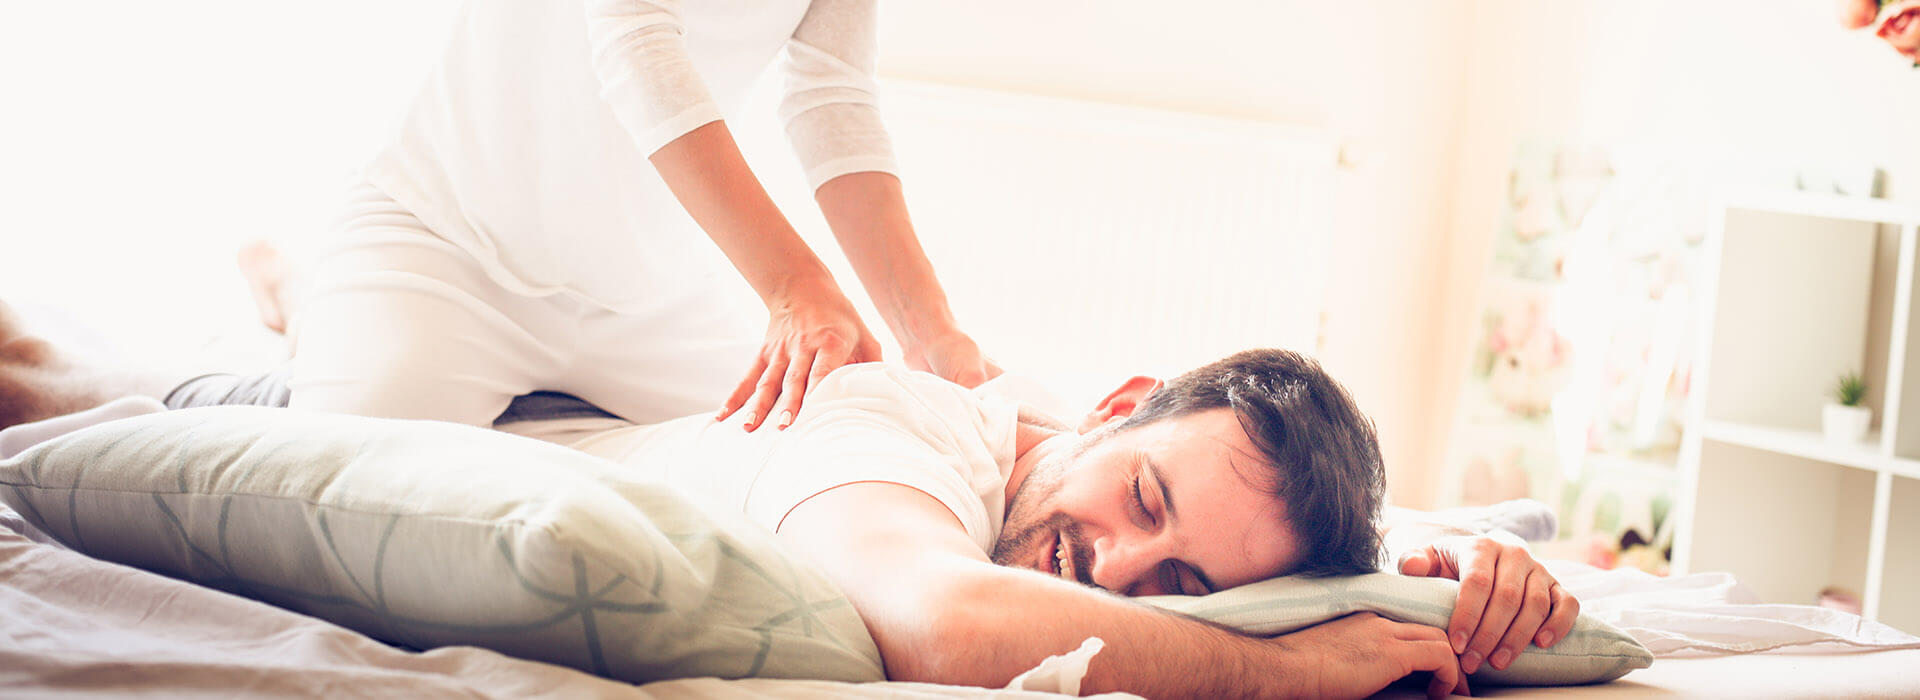 Frau gibt ihrem Partner auf gemeinsamen Bett eine Massage